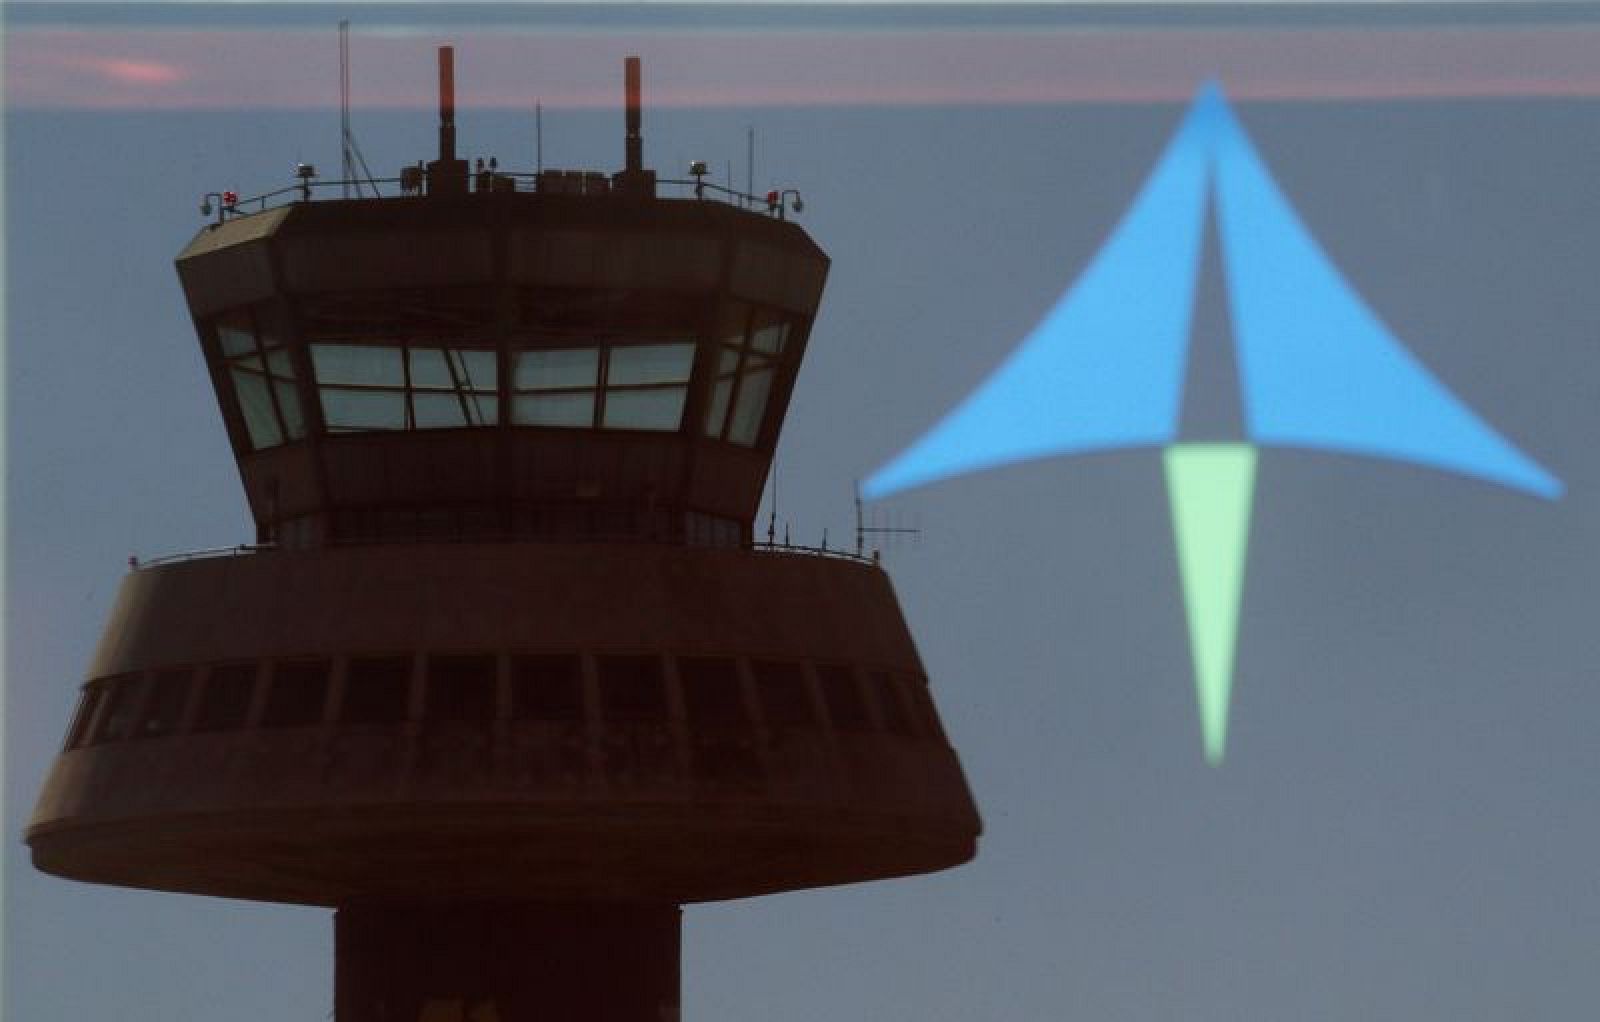 Reflejo de una torre de control sobre un cristal con el logo de AENA